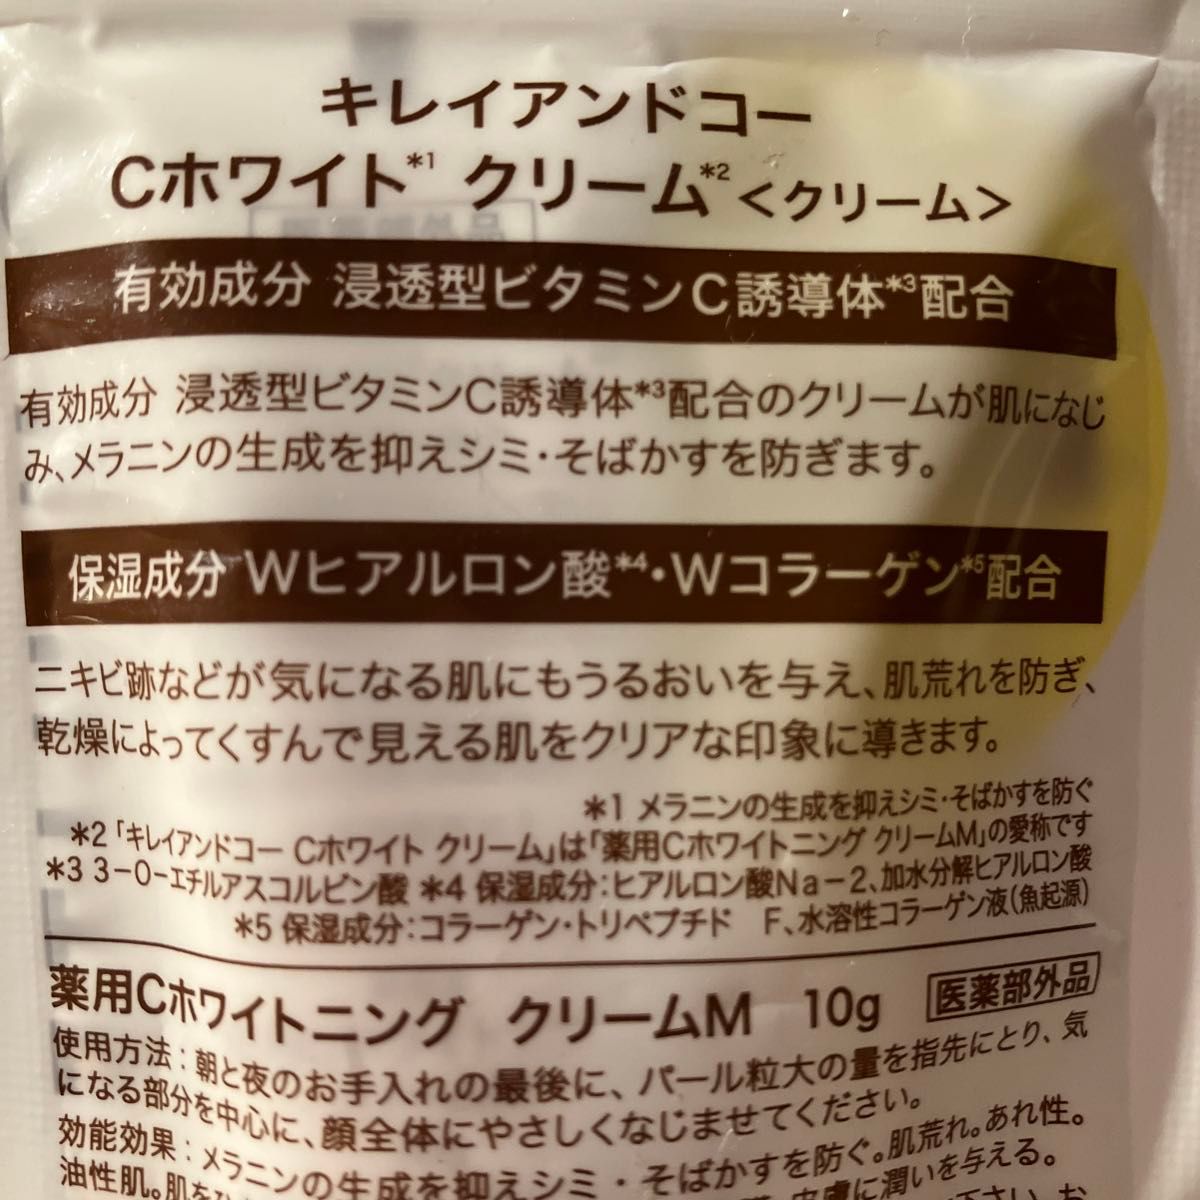 新品未開封 Kirei&co.キレイアンドコー Ｃホワイトクリーム10g ★クーポン使用で200円引きになります★